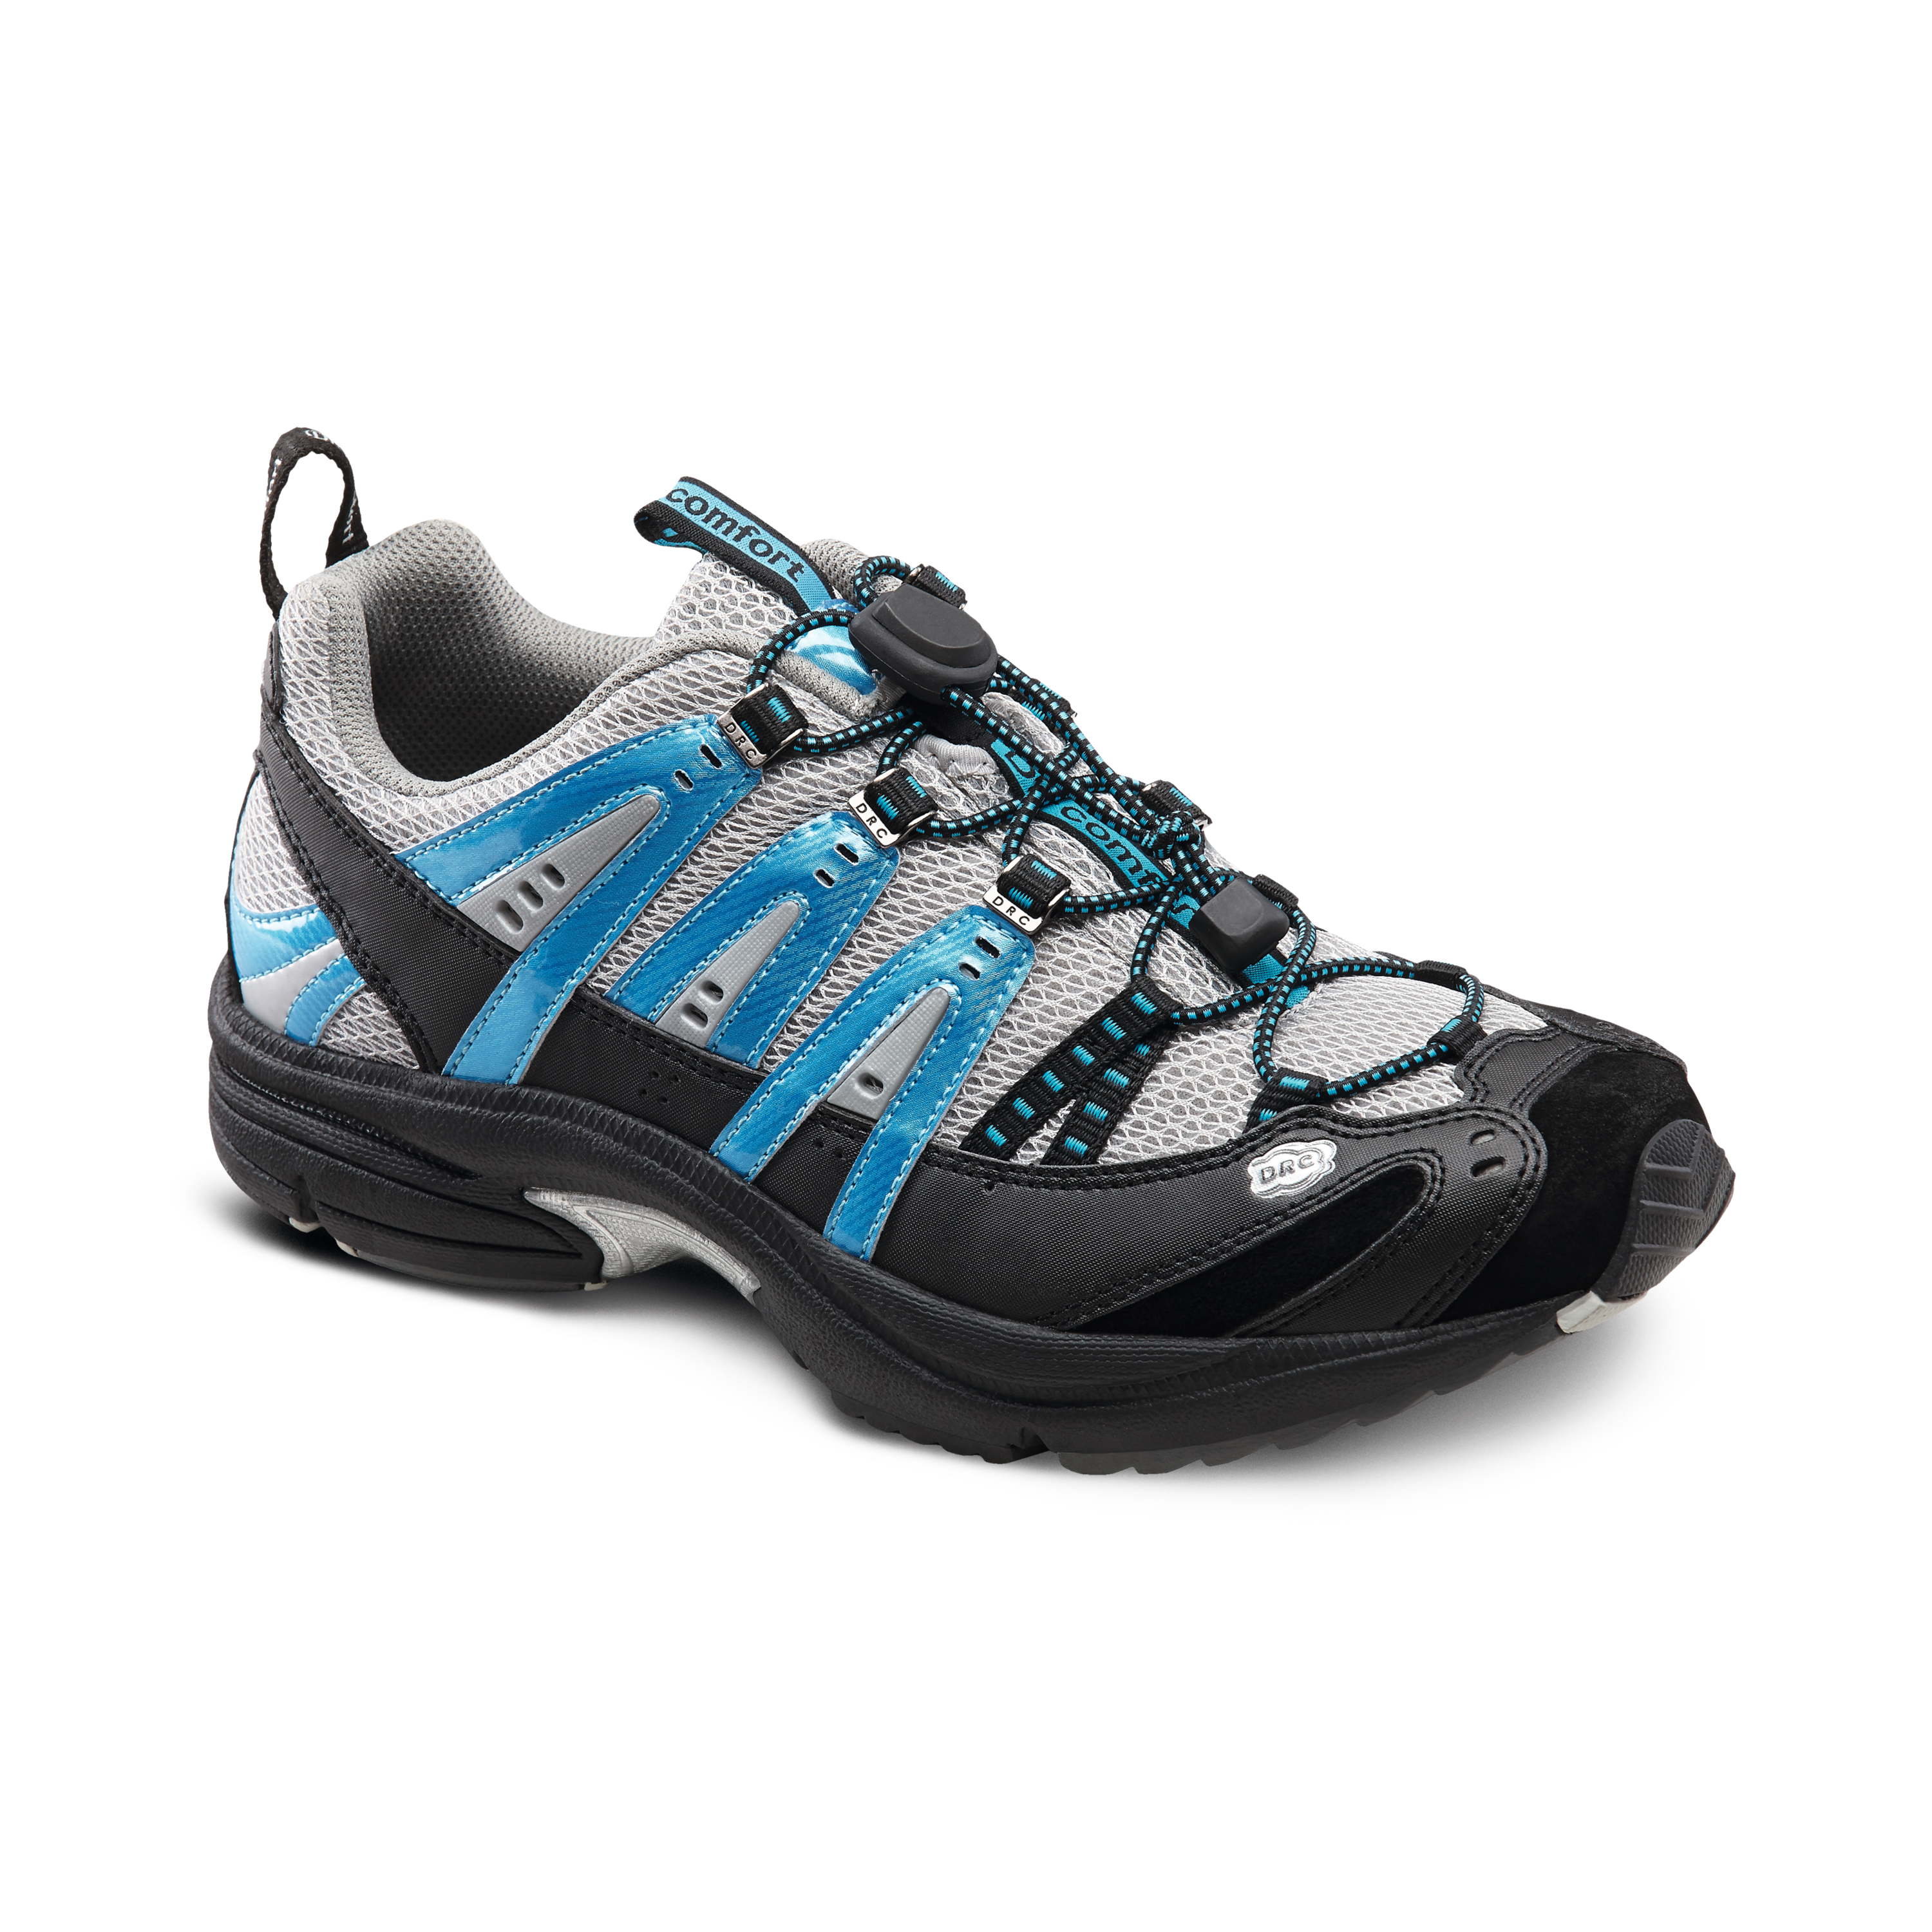 Produktbild DR. COMFORT® Performance blau, Orthopädische Schuhe, Ideal für den aktiven Mann. Leichter und komfortabler Freizeitschuh